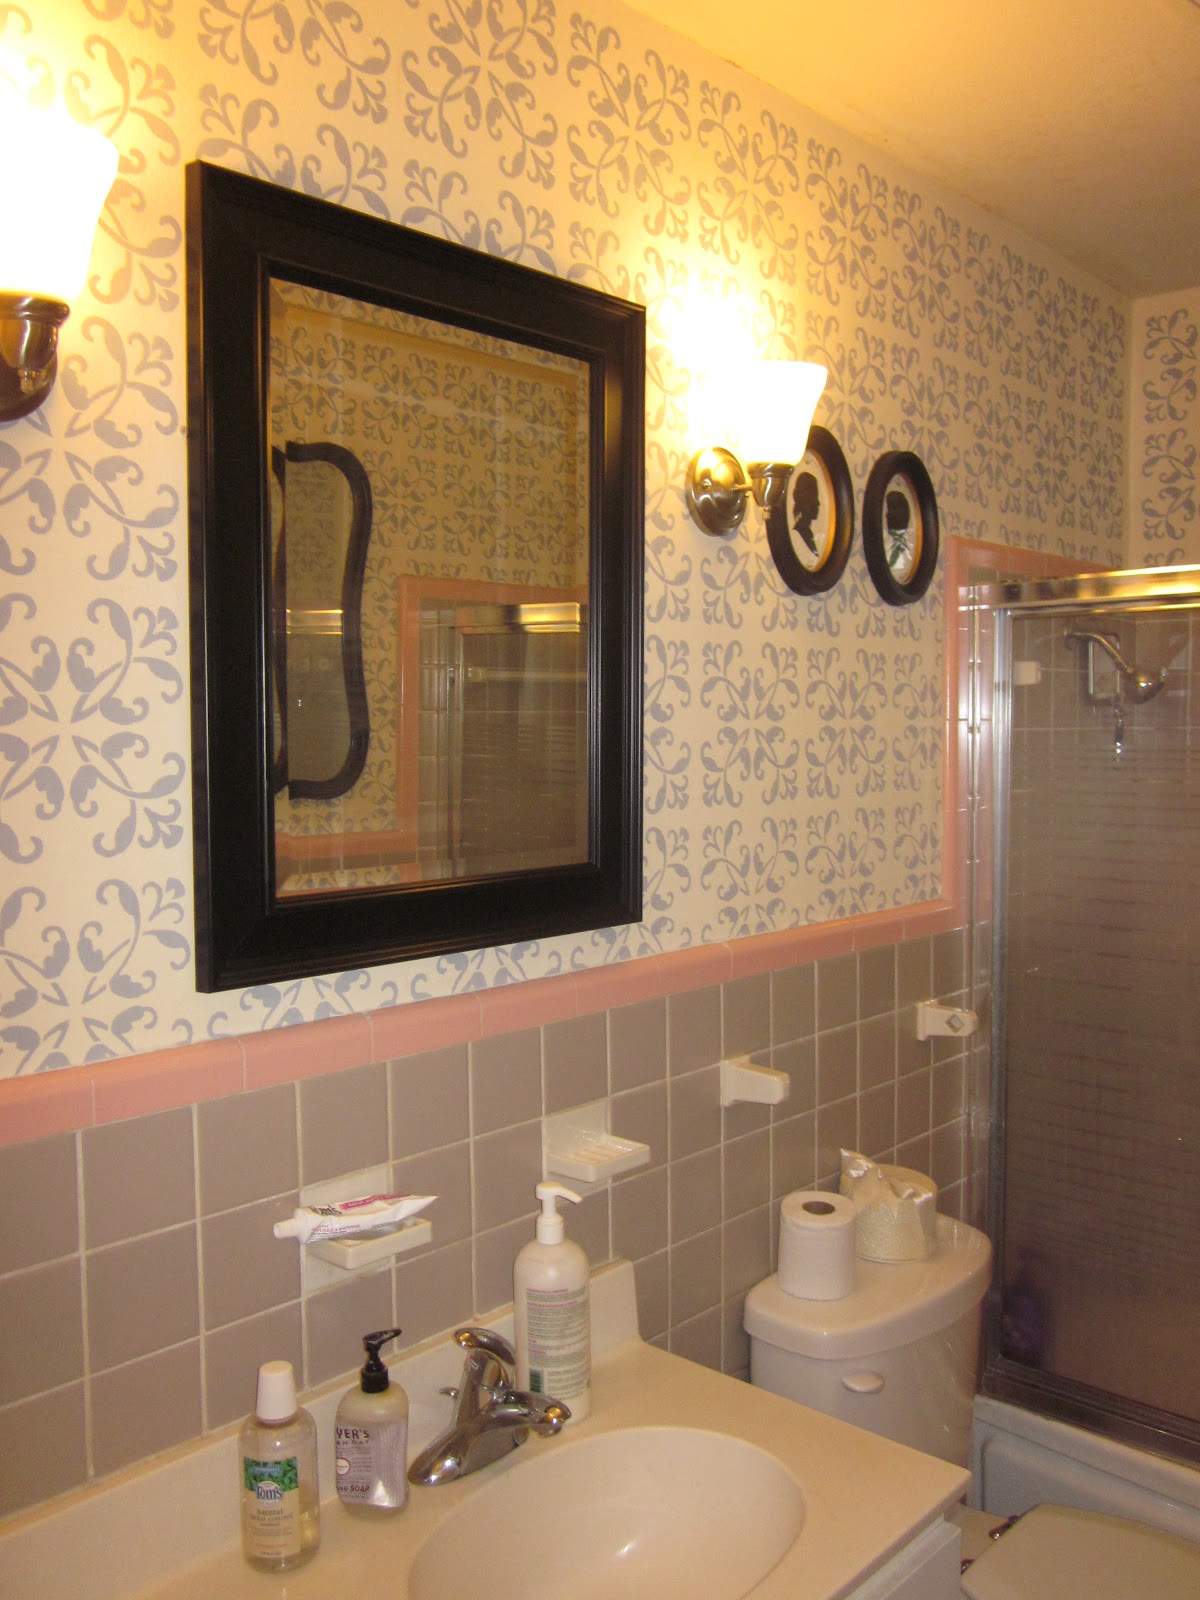 ... Juice: The Great Bathroom Renovation of 2011: Wallpaper Stencil DIY